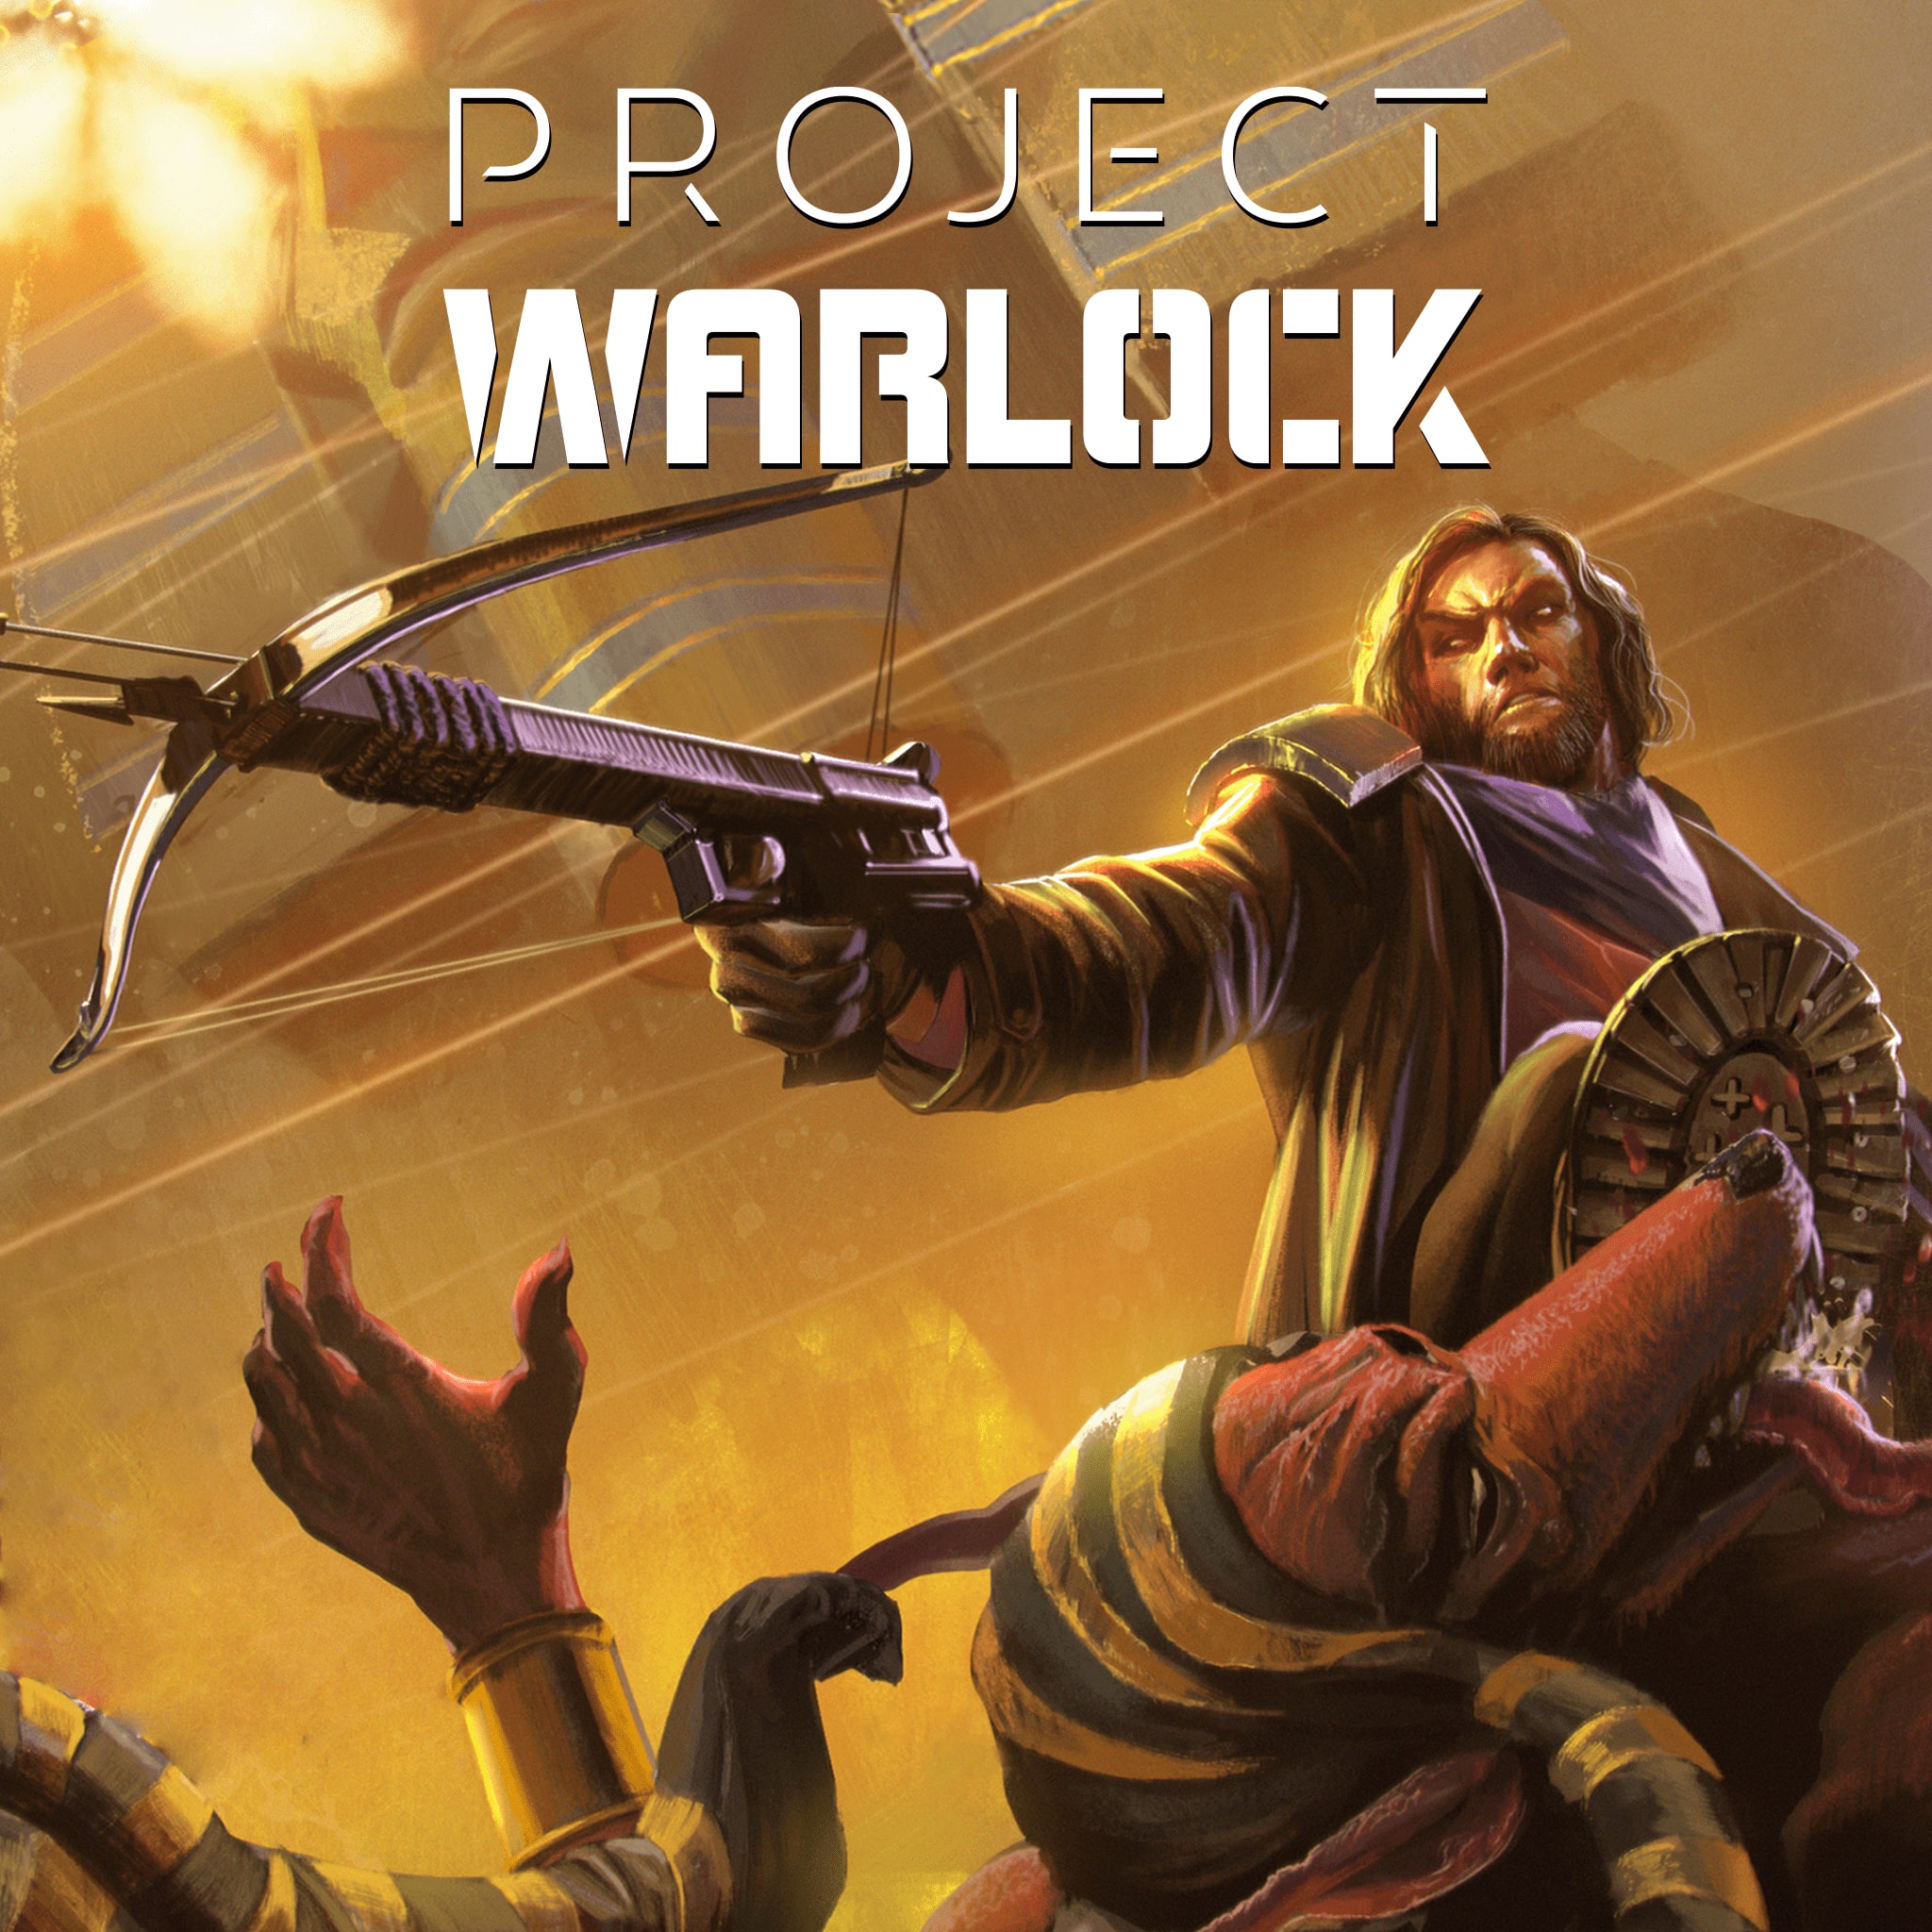 Project Warlock